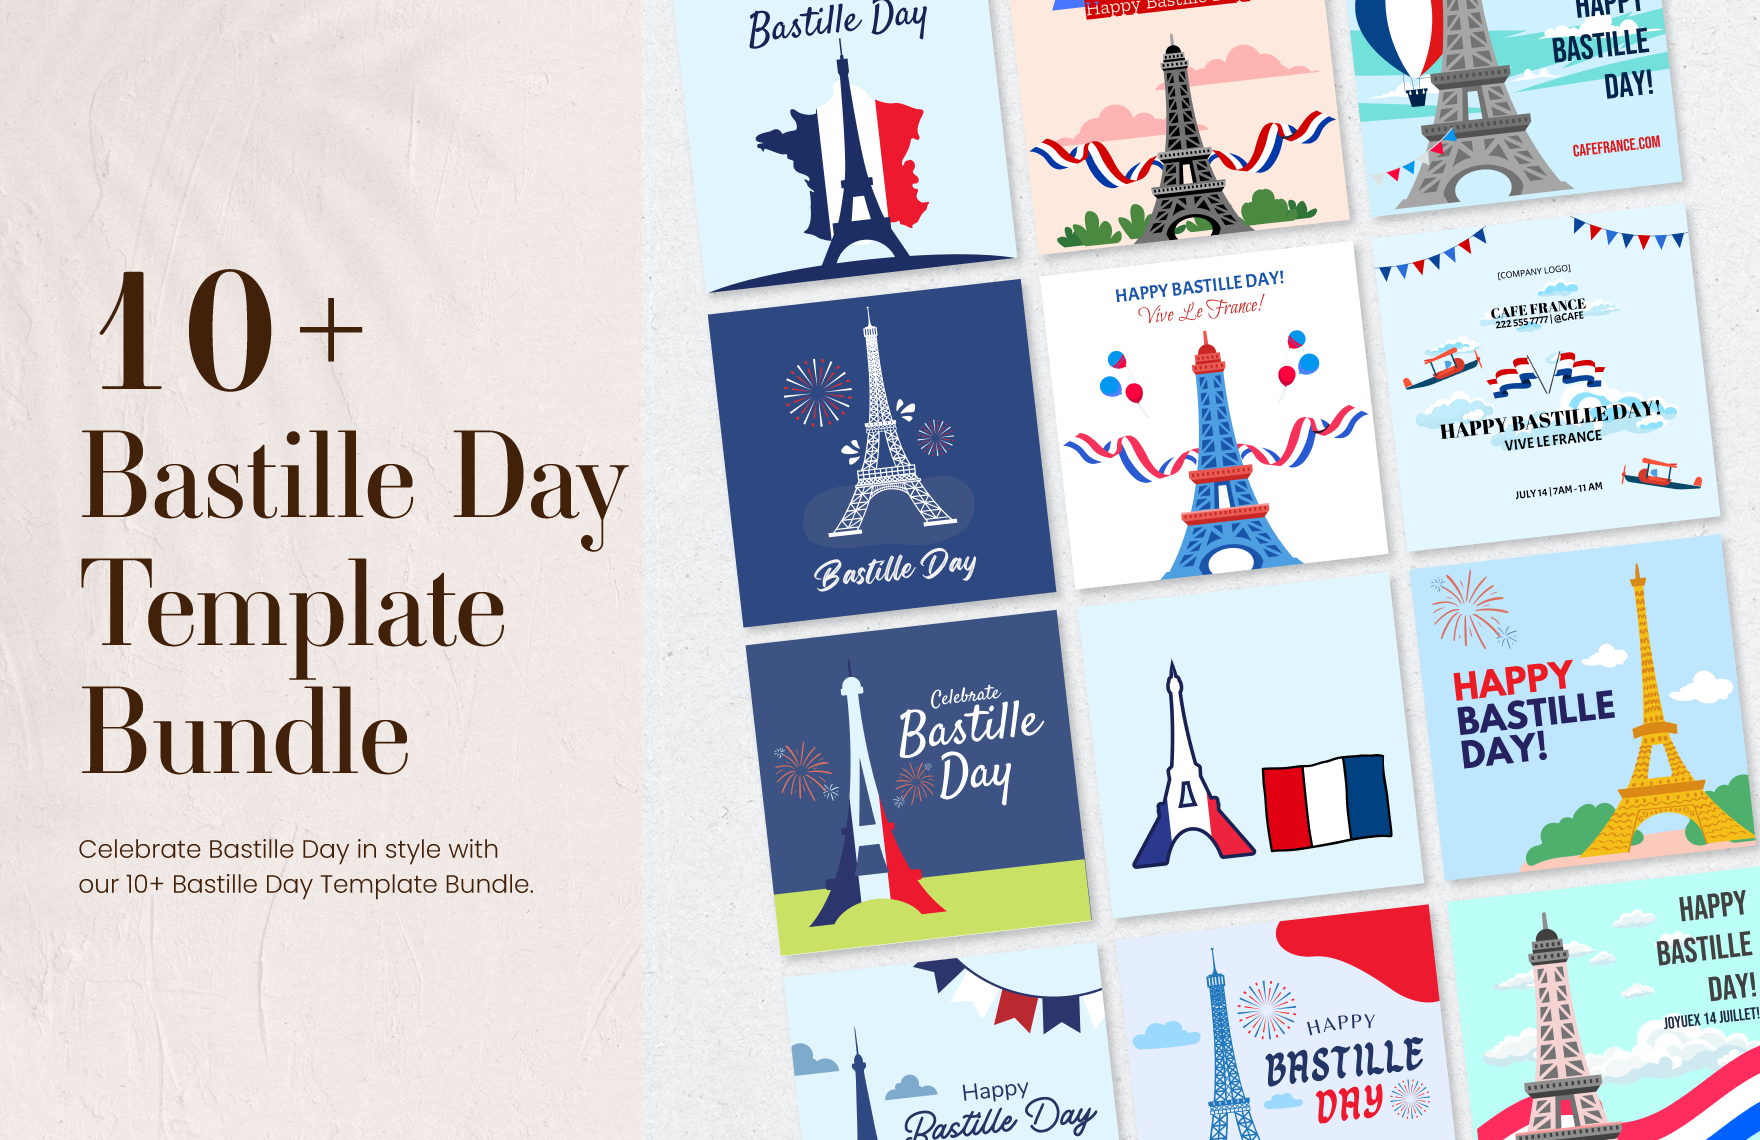 Free 10+ Bastille Day Template Bundle in Illustrator, PSD, EPS, SVG, PNG, JPEG